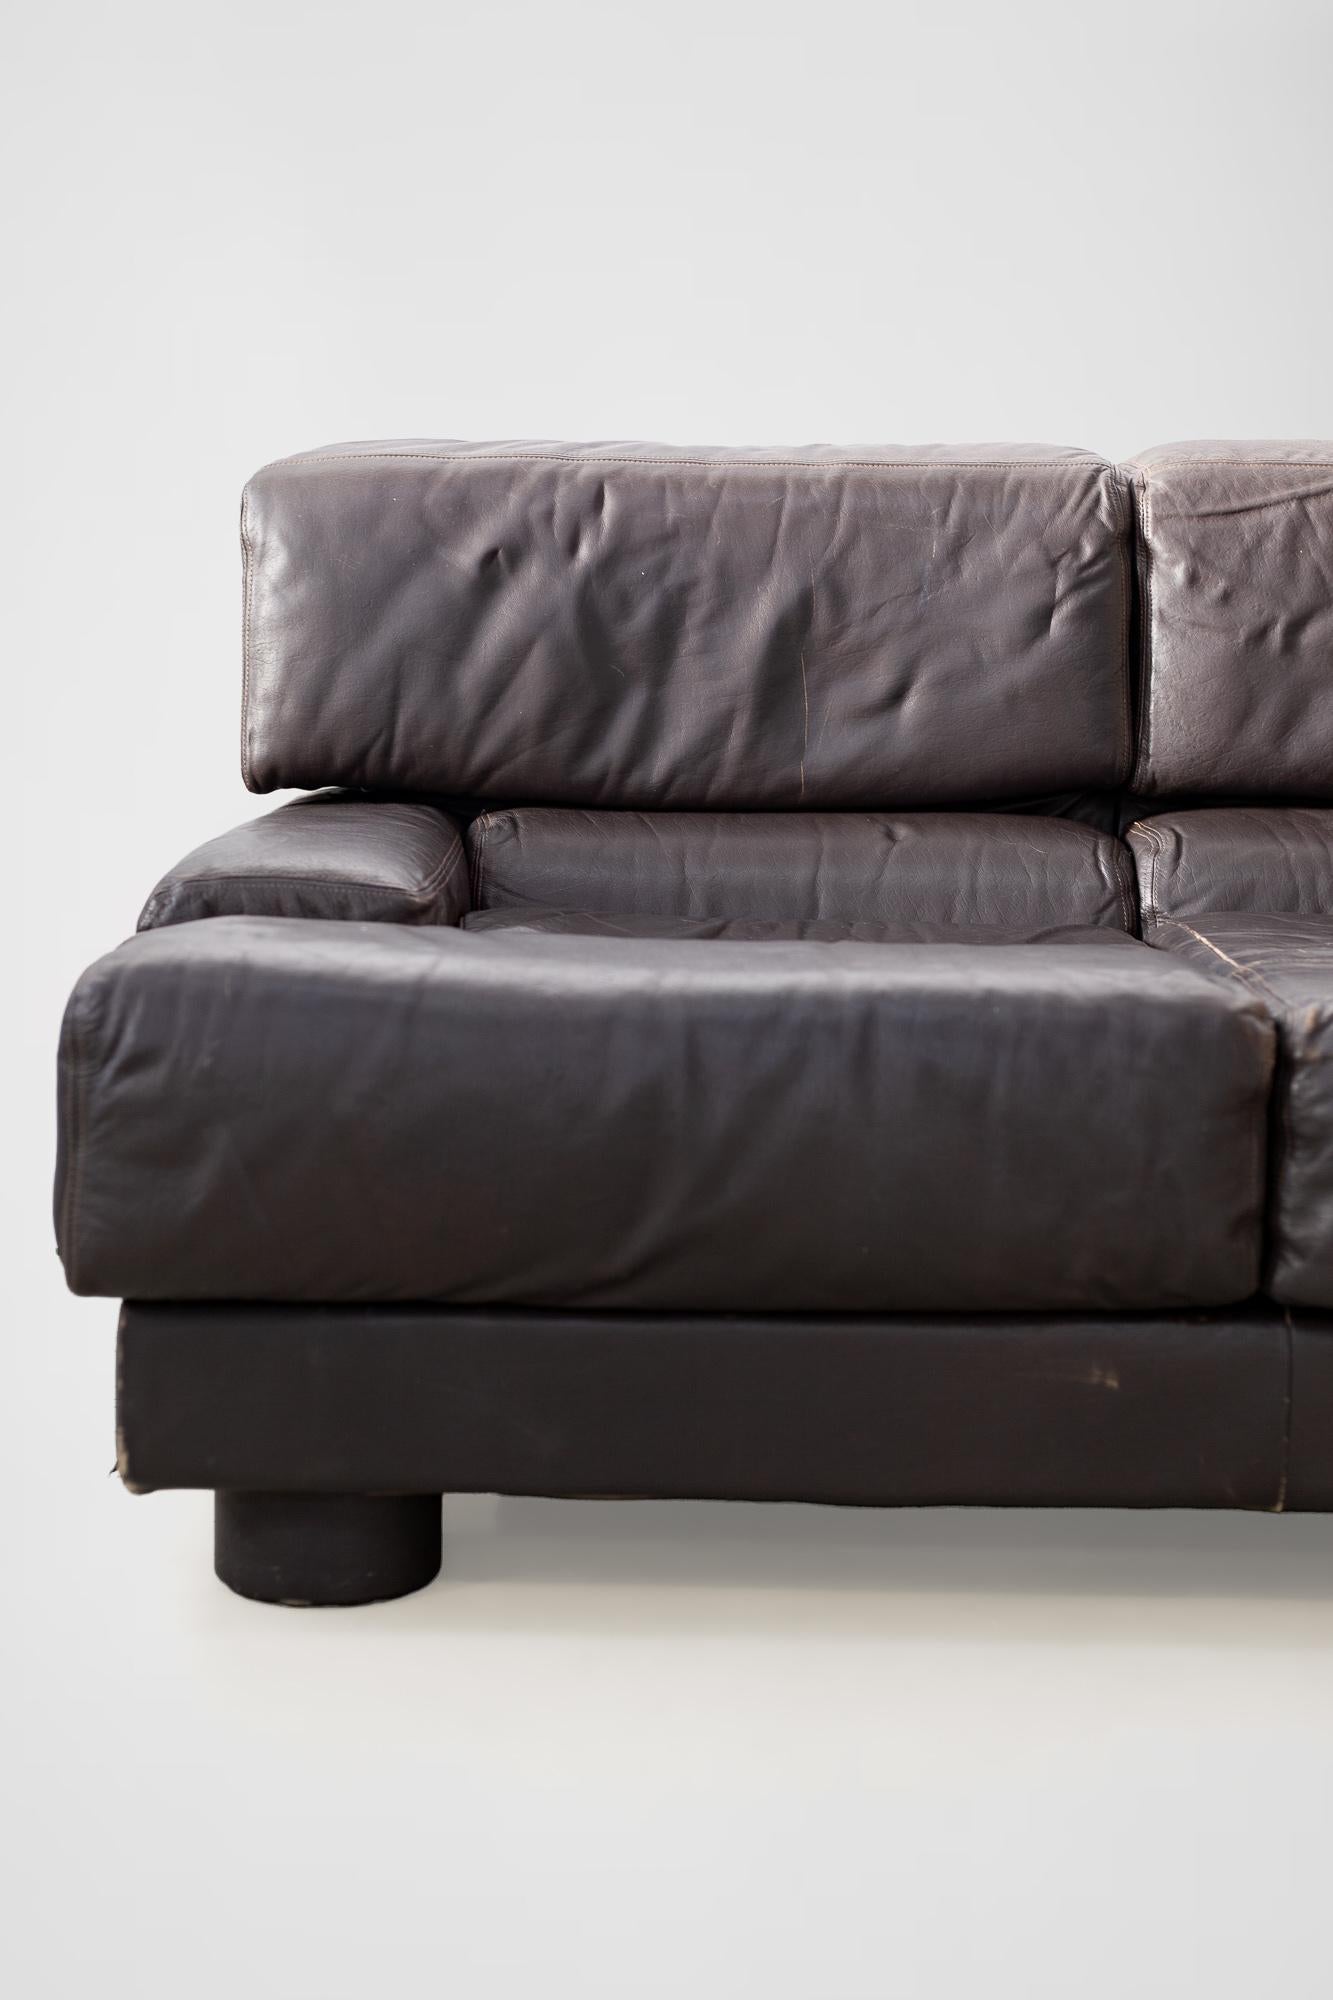 Rare Percival Lafer Sofa in Dark Brown Leather For Sale 4